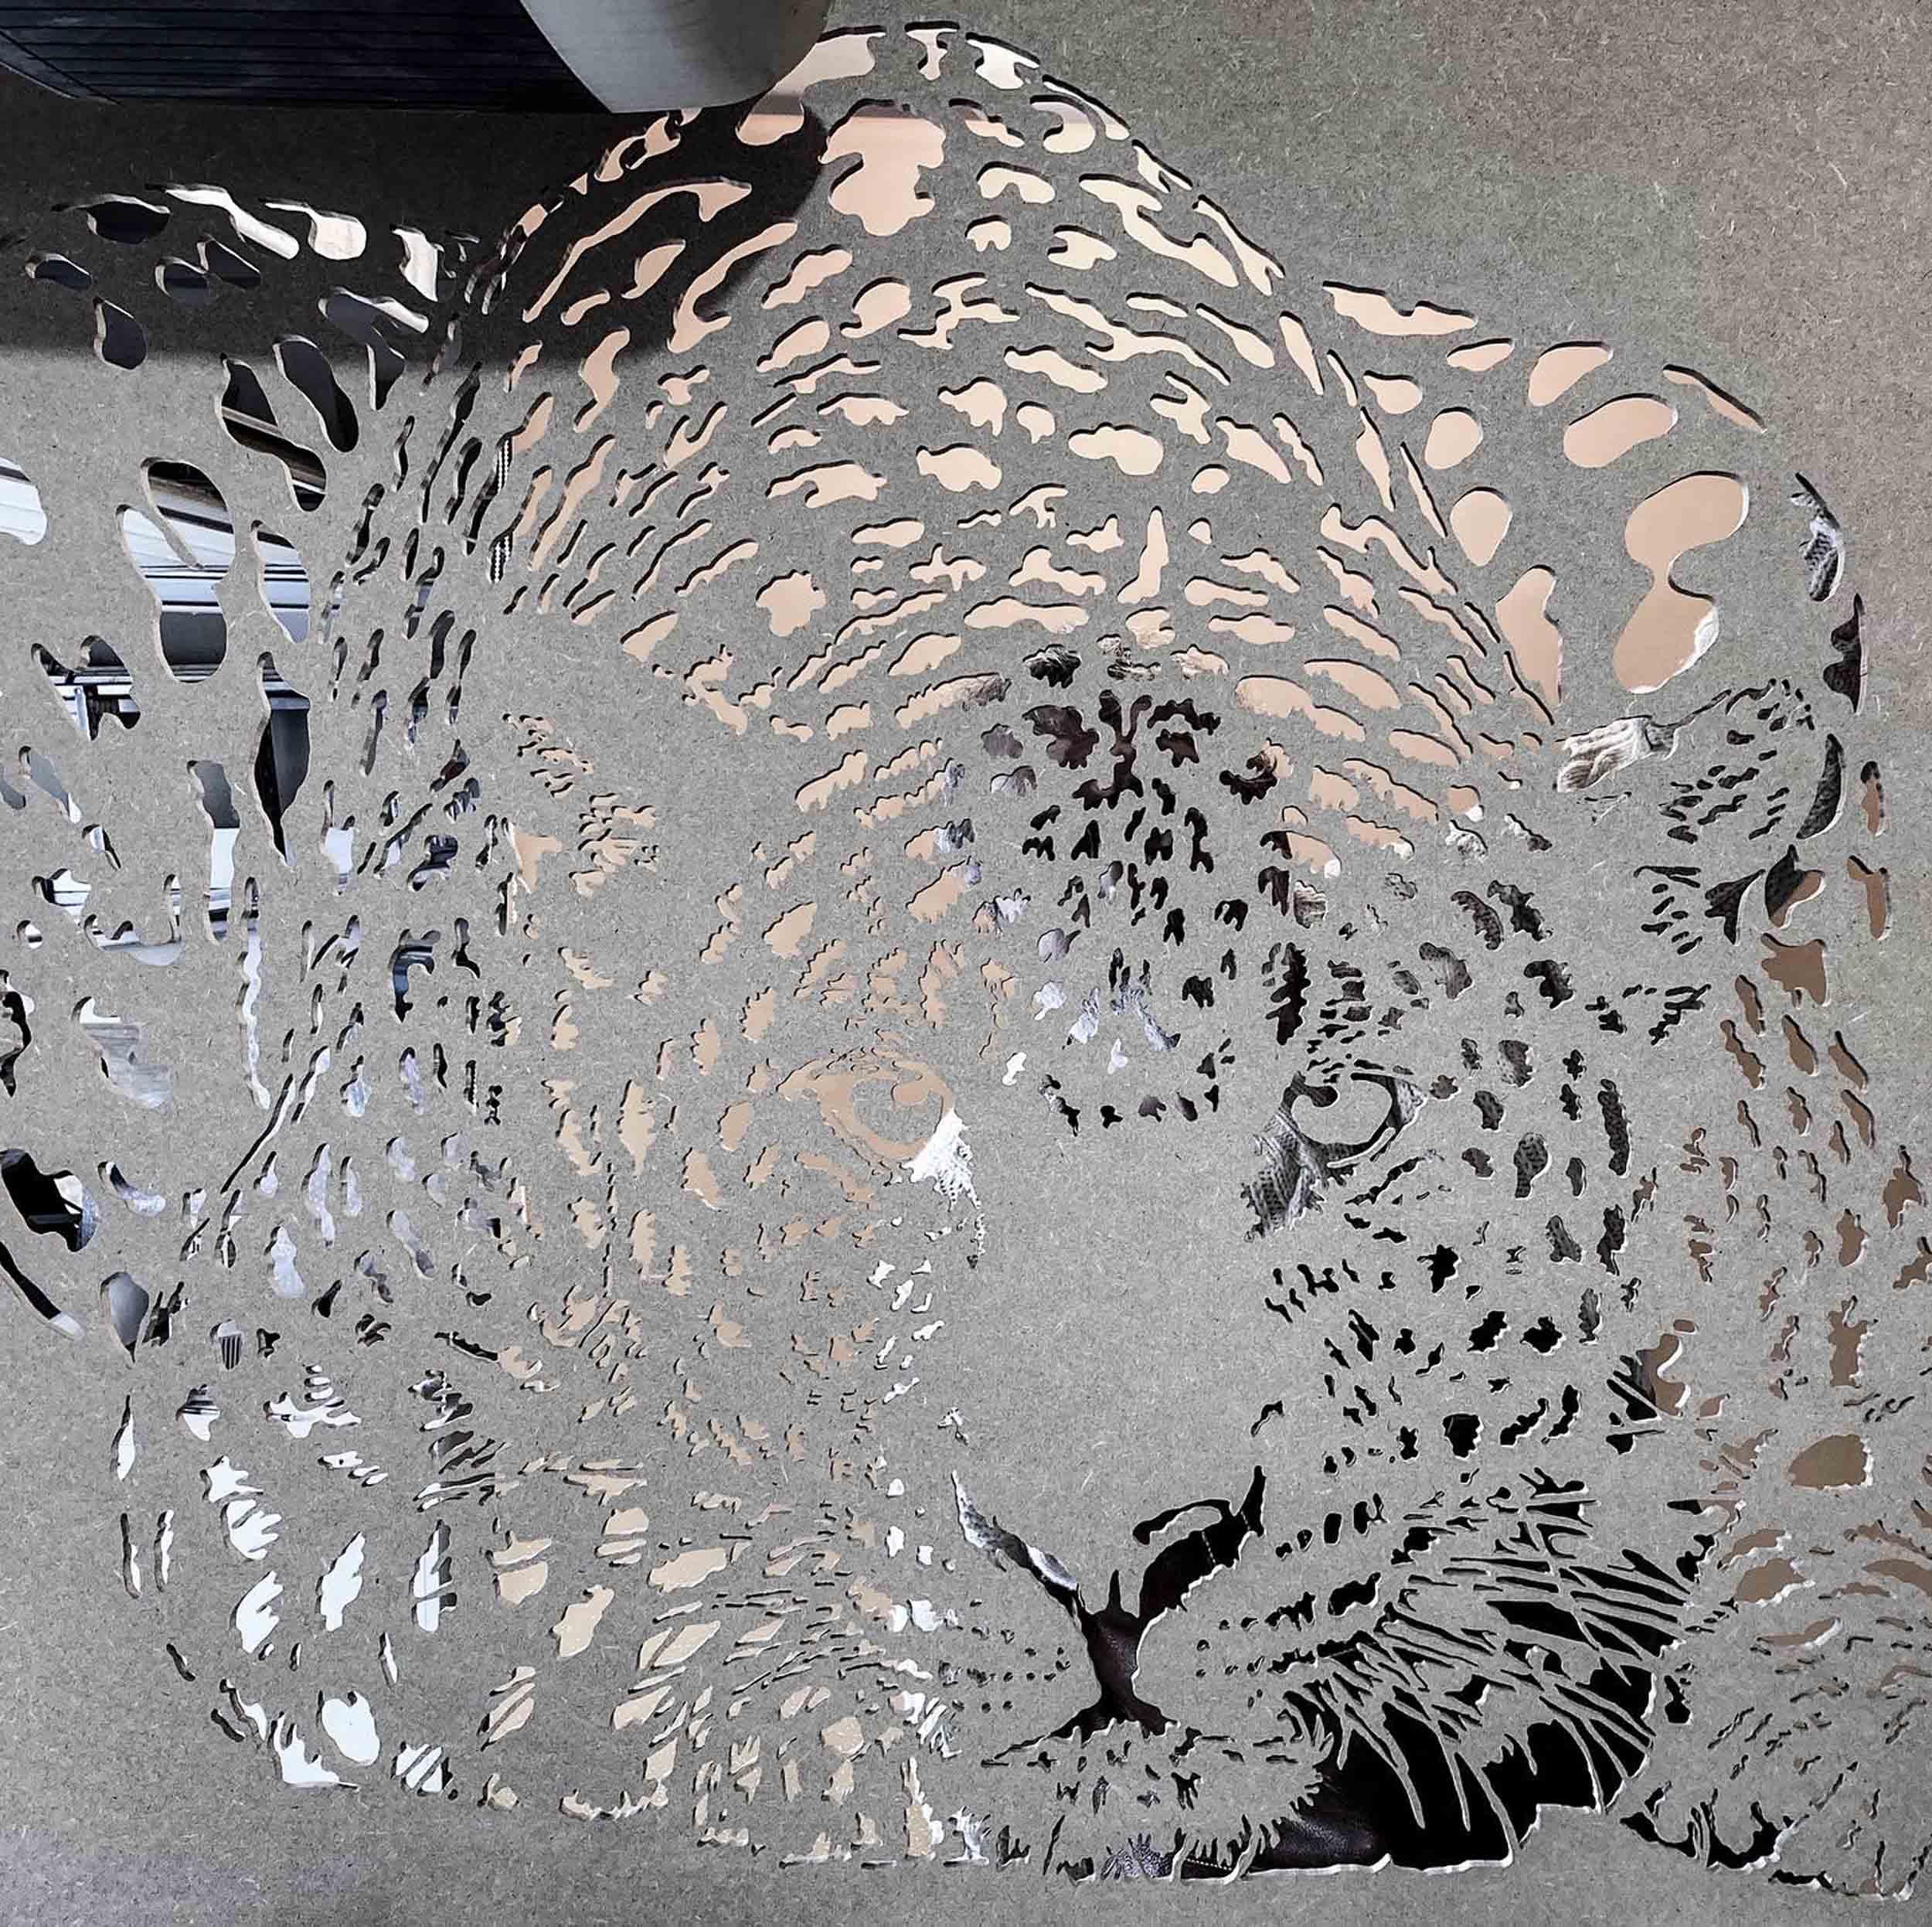 25 mars, en direct de l’atelier, notre léopard aux aguets a pris vie….